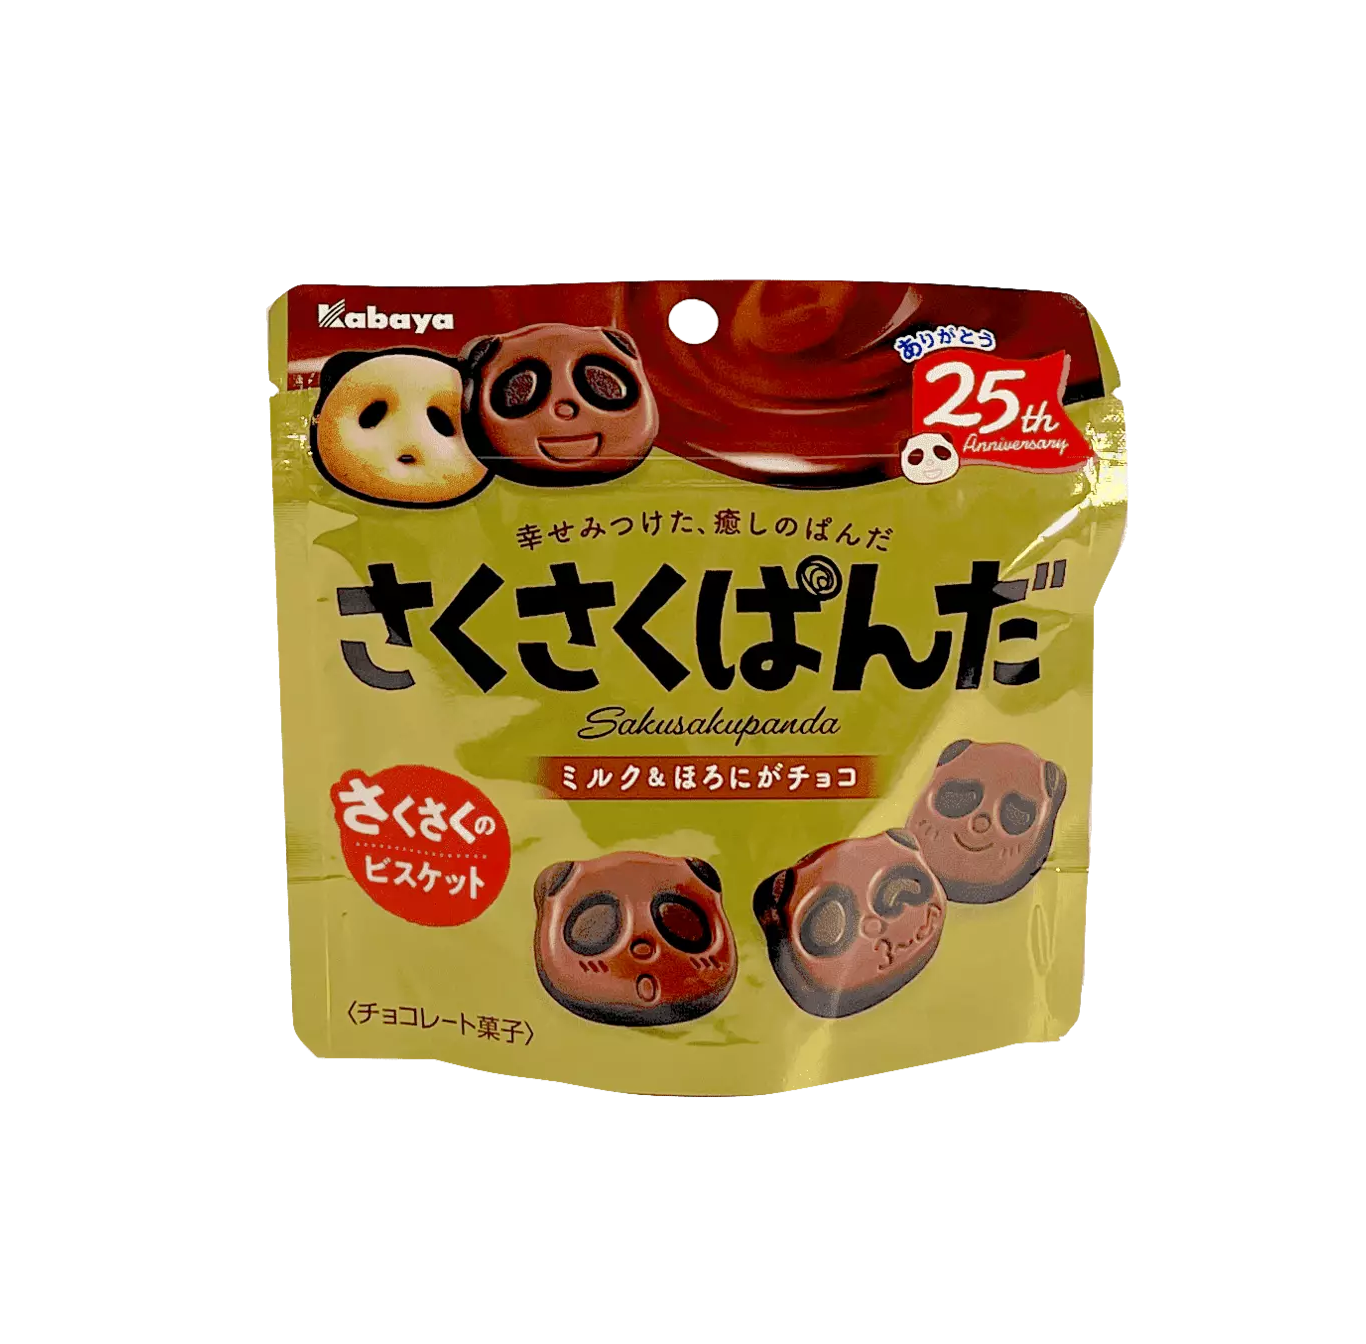 Saku 熊猫 巧克力风味 47g Sumiya 日本